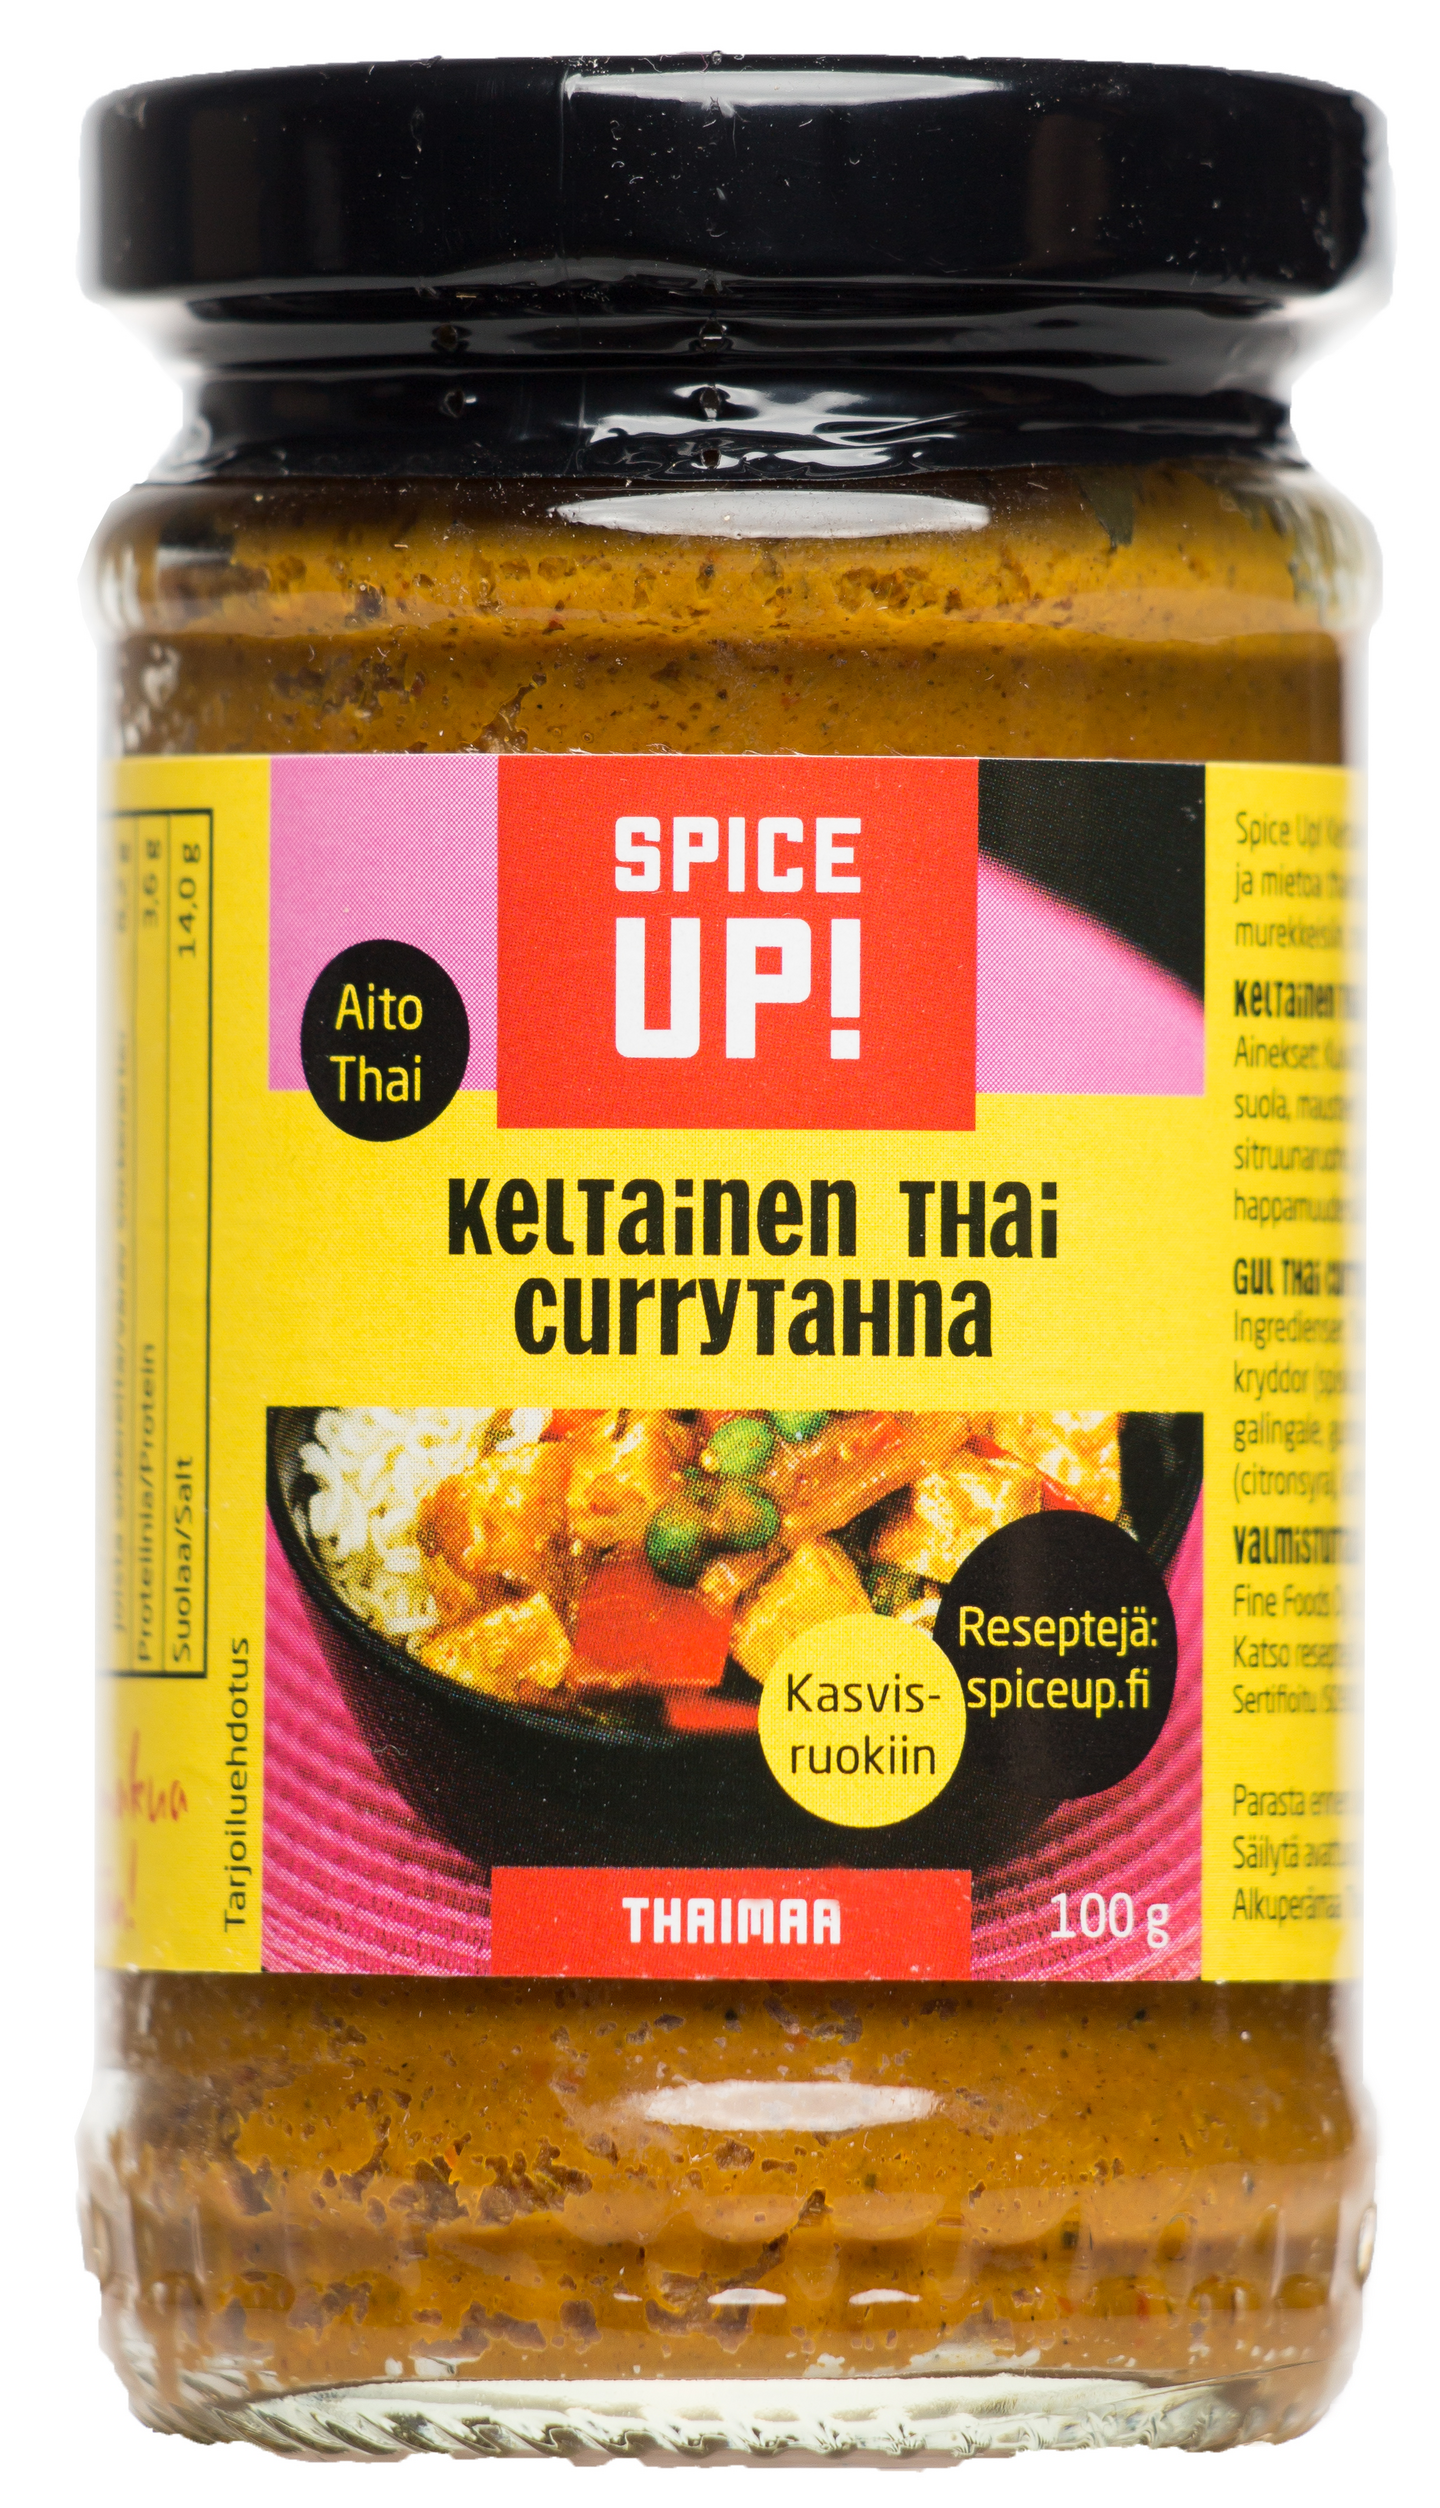 Spice Up! KeltainenThai currytahna 100g